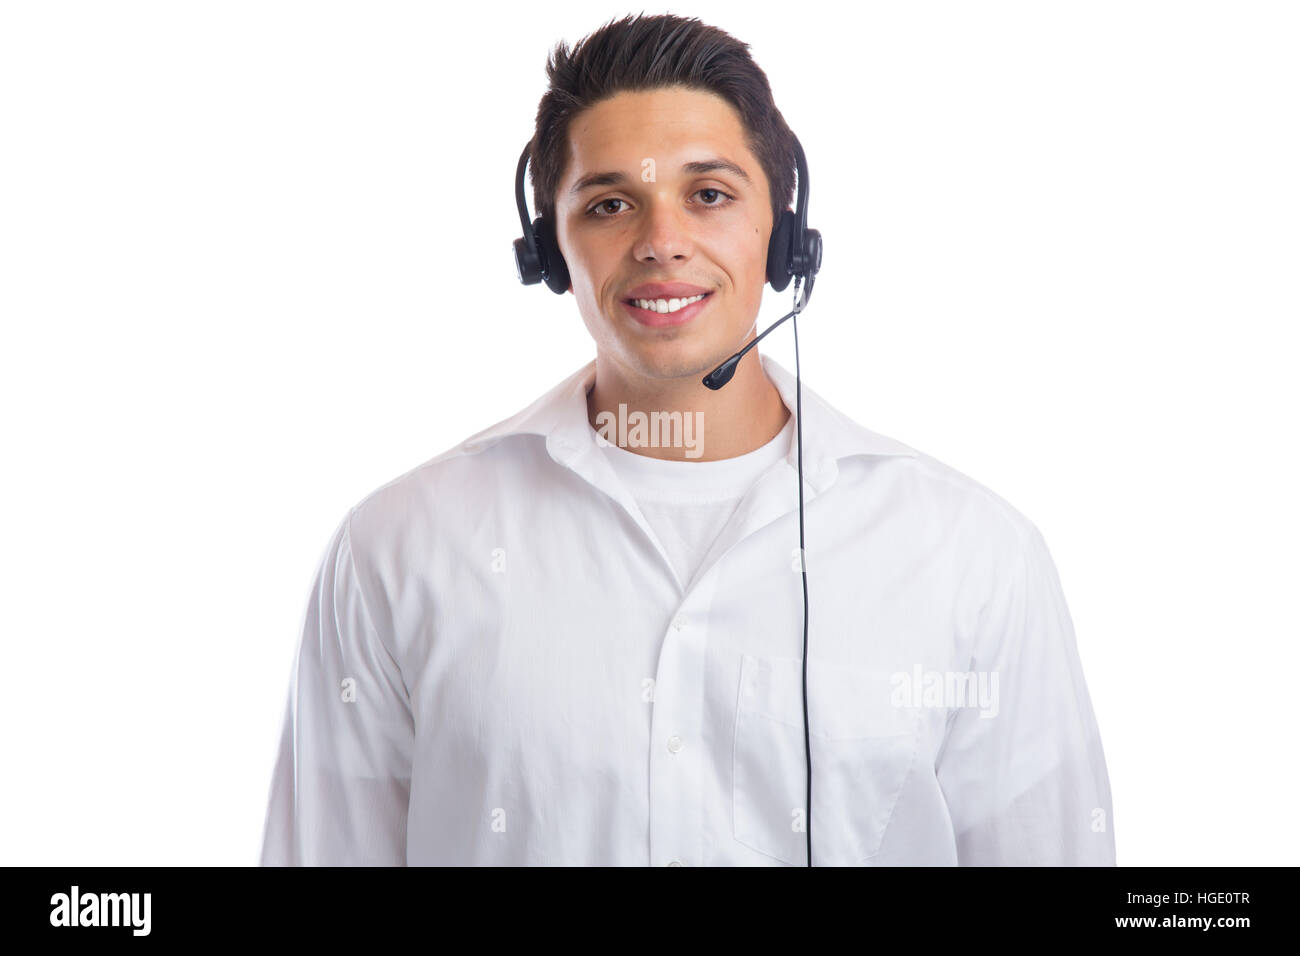 Junger Mann mit Headset Telefon Phone Call center Agent portrait Business isoliert auf weißem Hintergrund Stockfoto